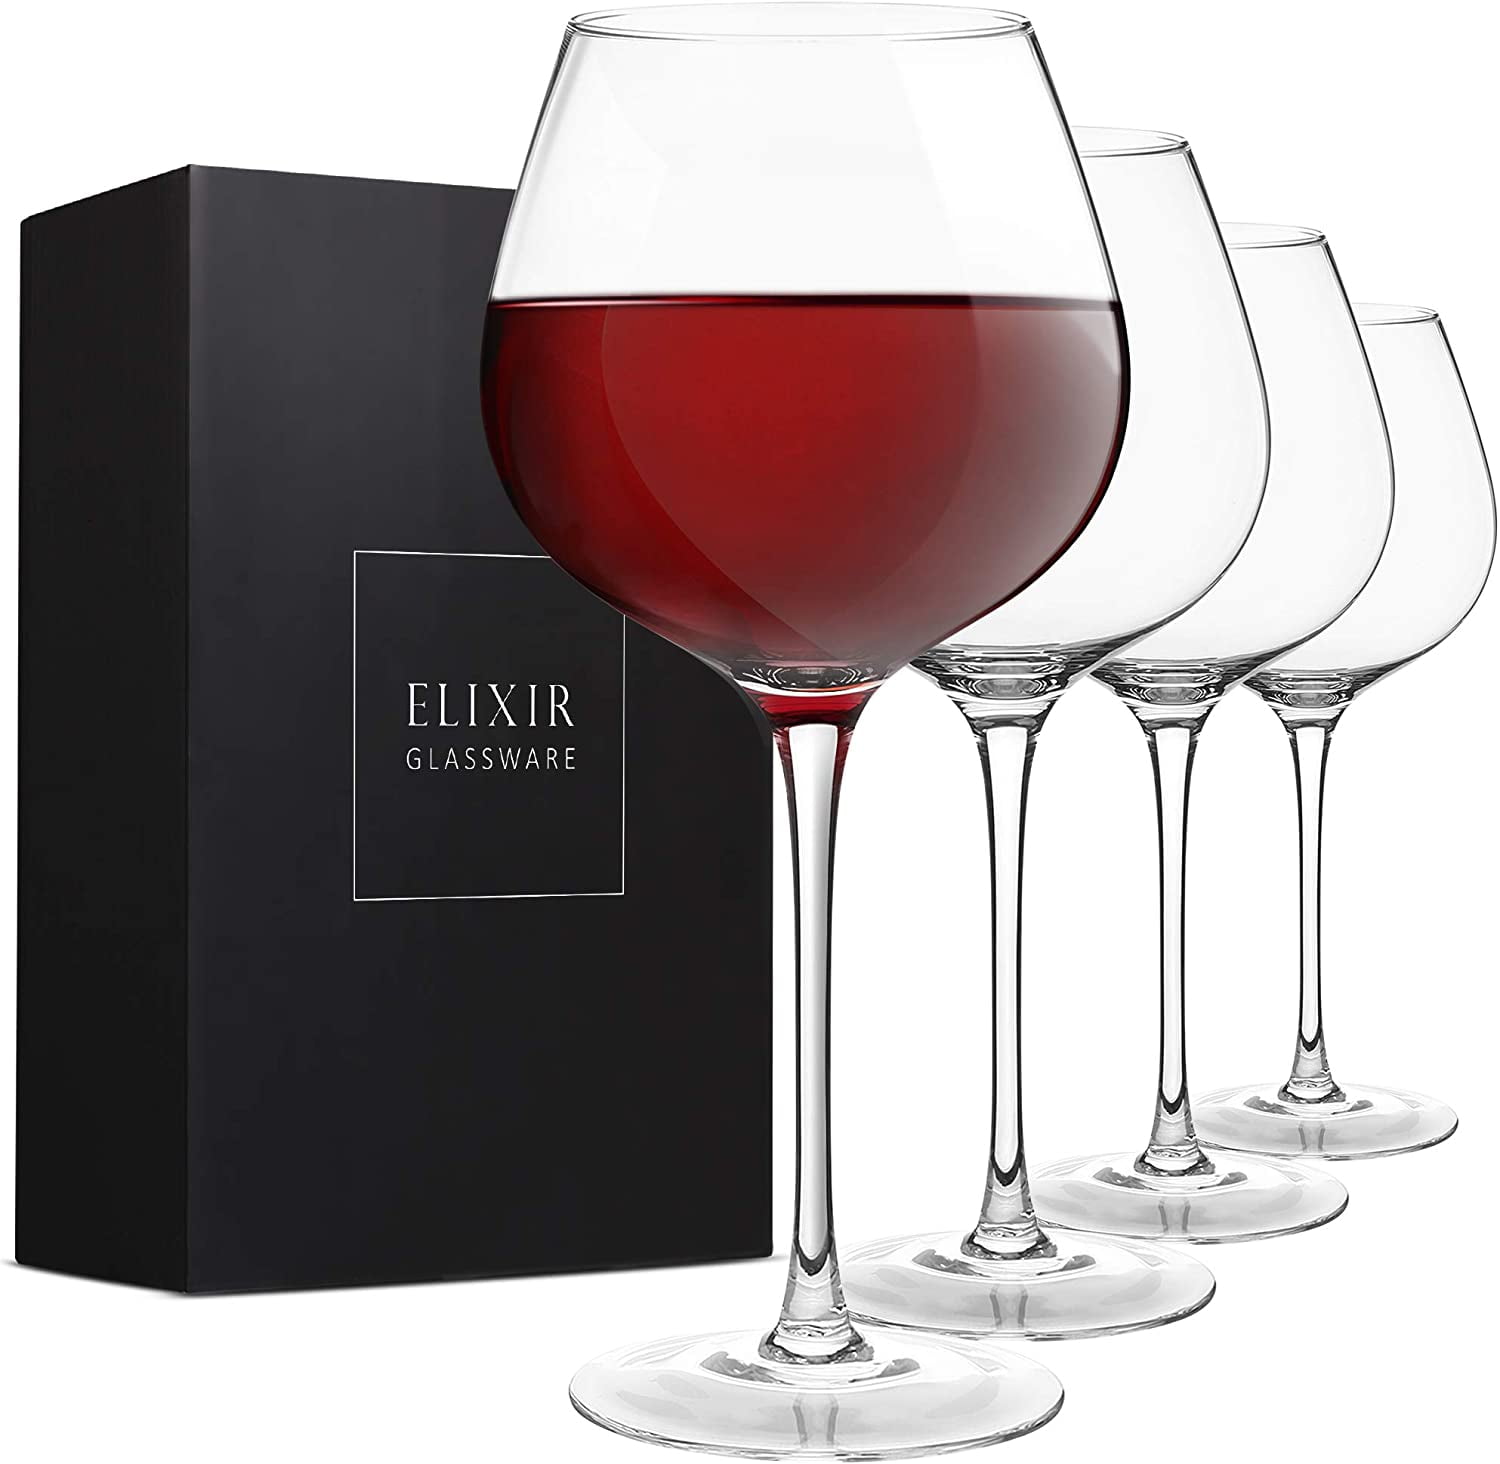 eventpartener 4 Pack Wine Glasses, 10 oz Crystal Red Glasses White